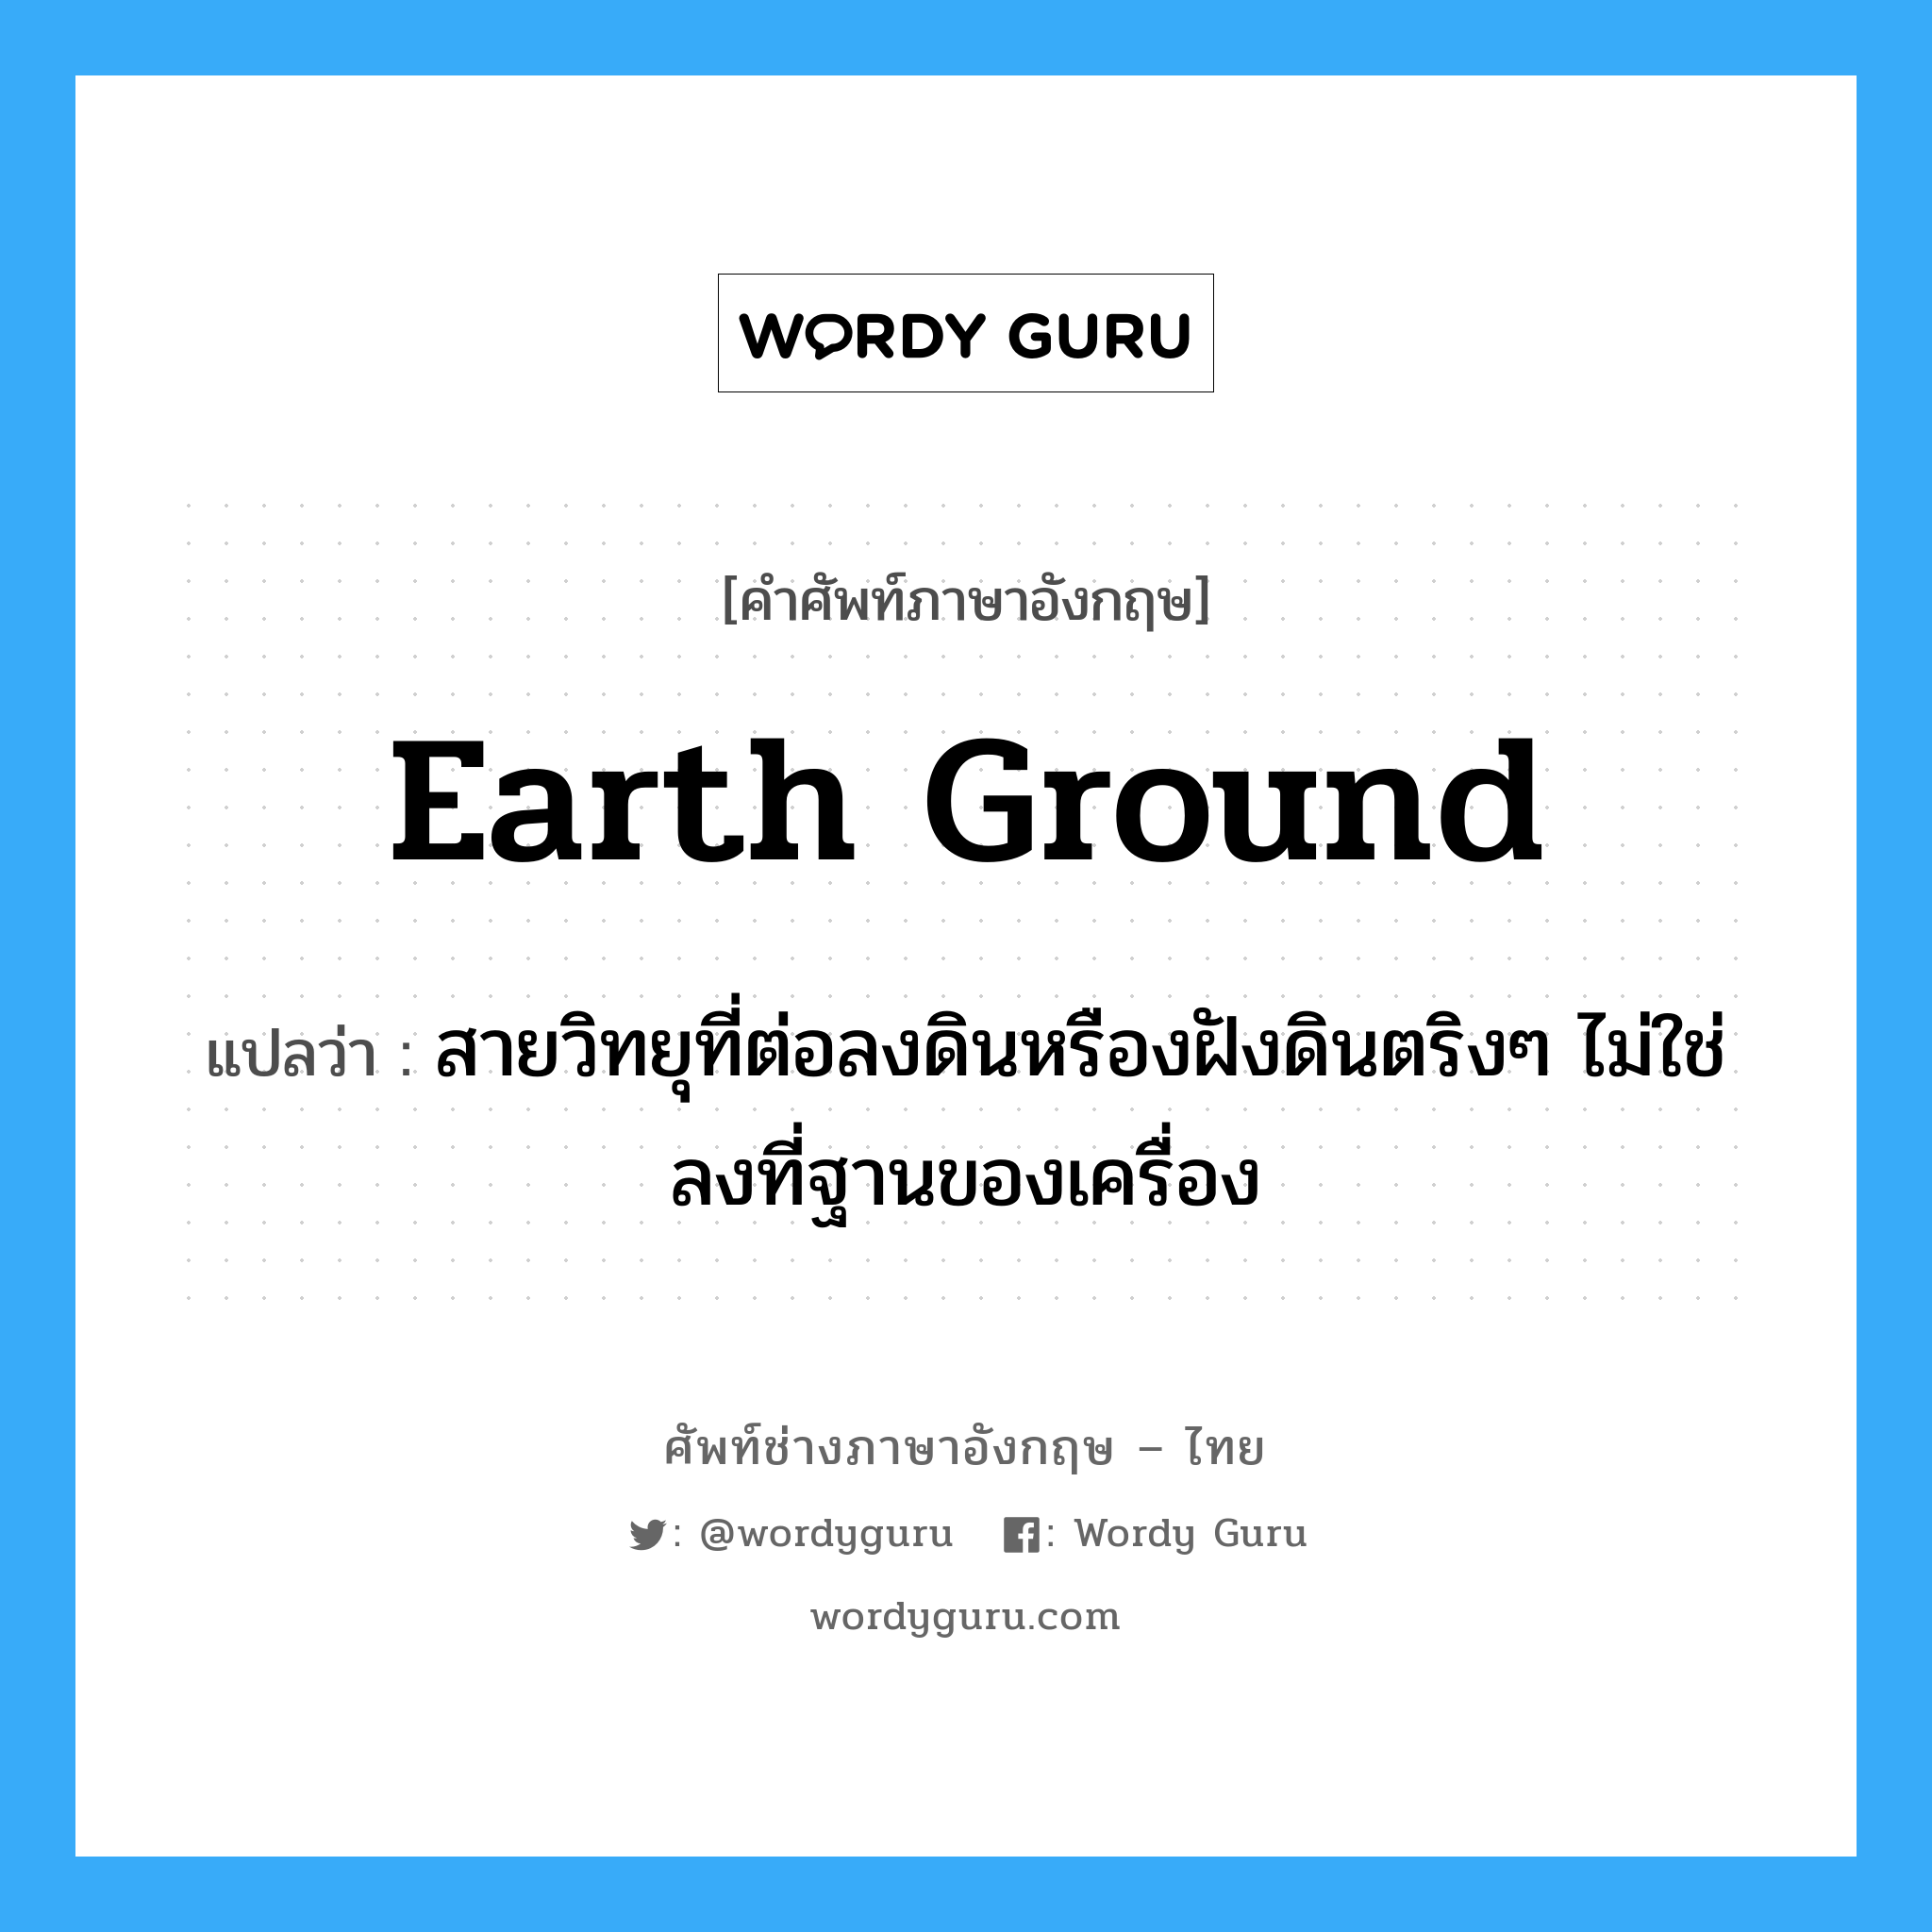 earth ground แปลว่า?, คำศัพท์ช่างภาษาอังกฤษ - ไทย earth ground คำศัพท์ภาษาอังกฤษ earth ground แปลว่า สายวิทยุที่ต่อลงดินหรืองฝังดินตริงๆ ไม่ใช่ลงที่ฐานของเครื่อง